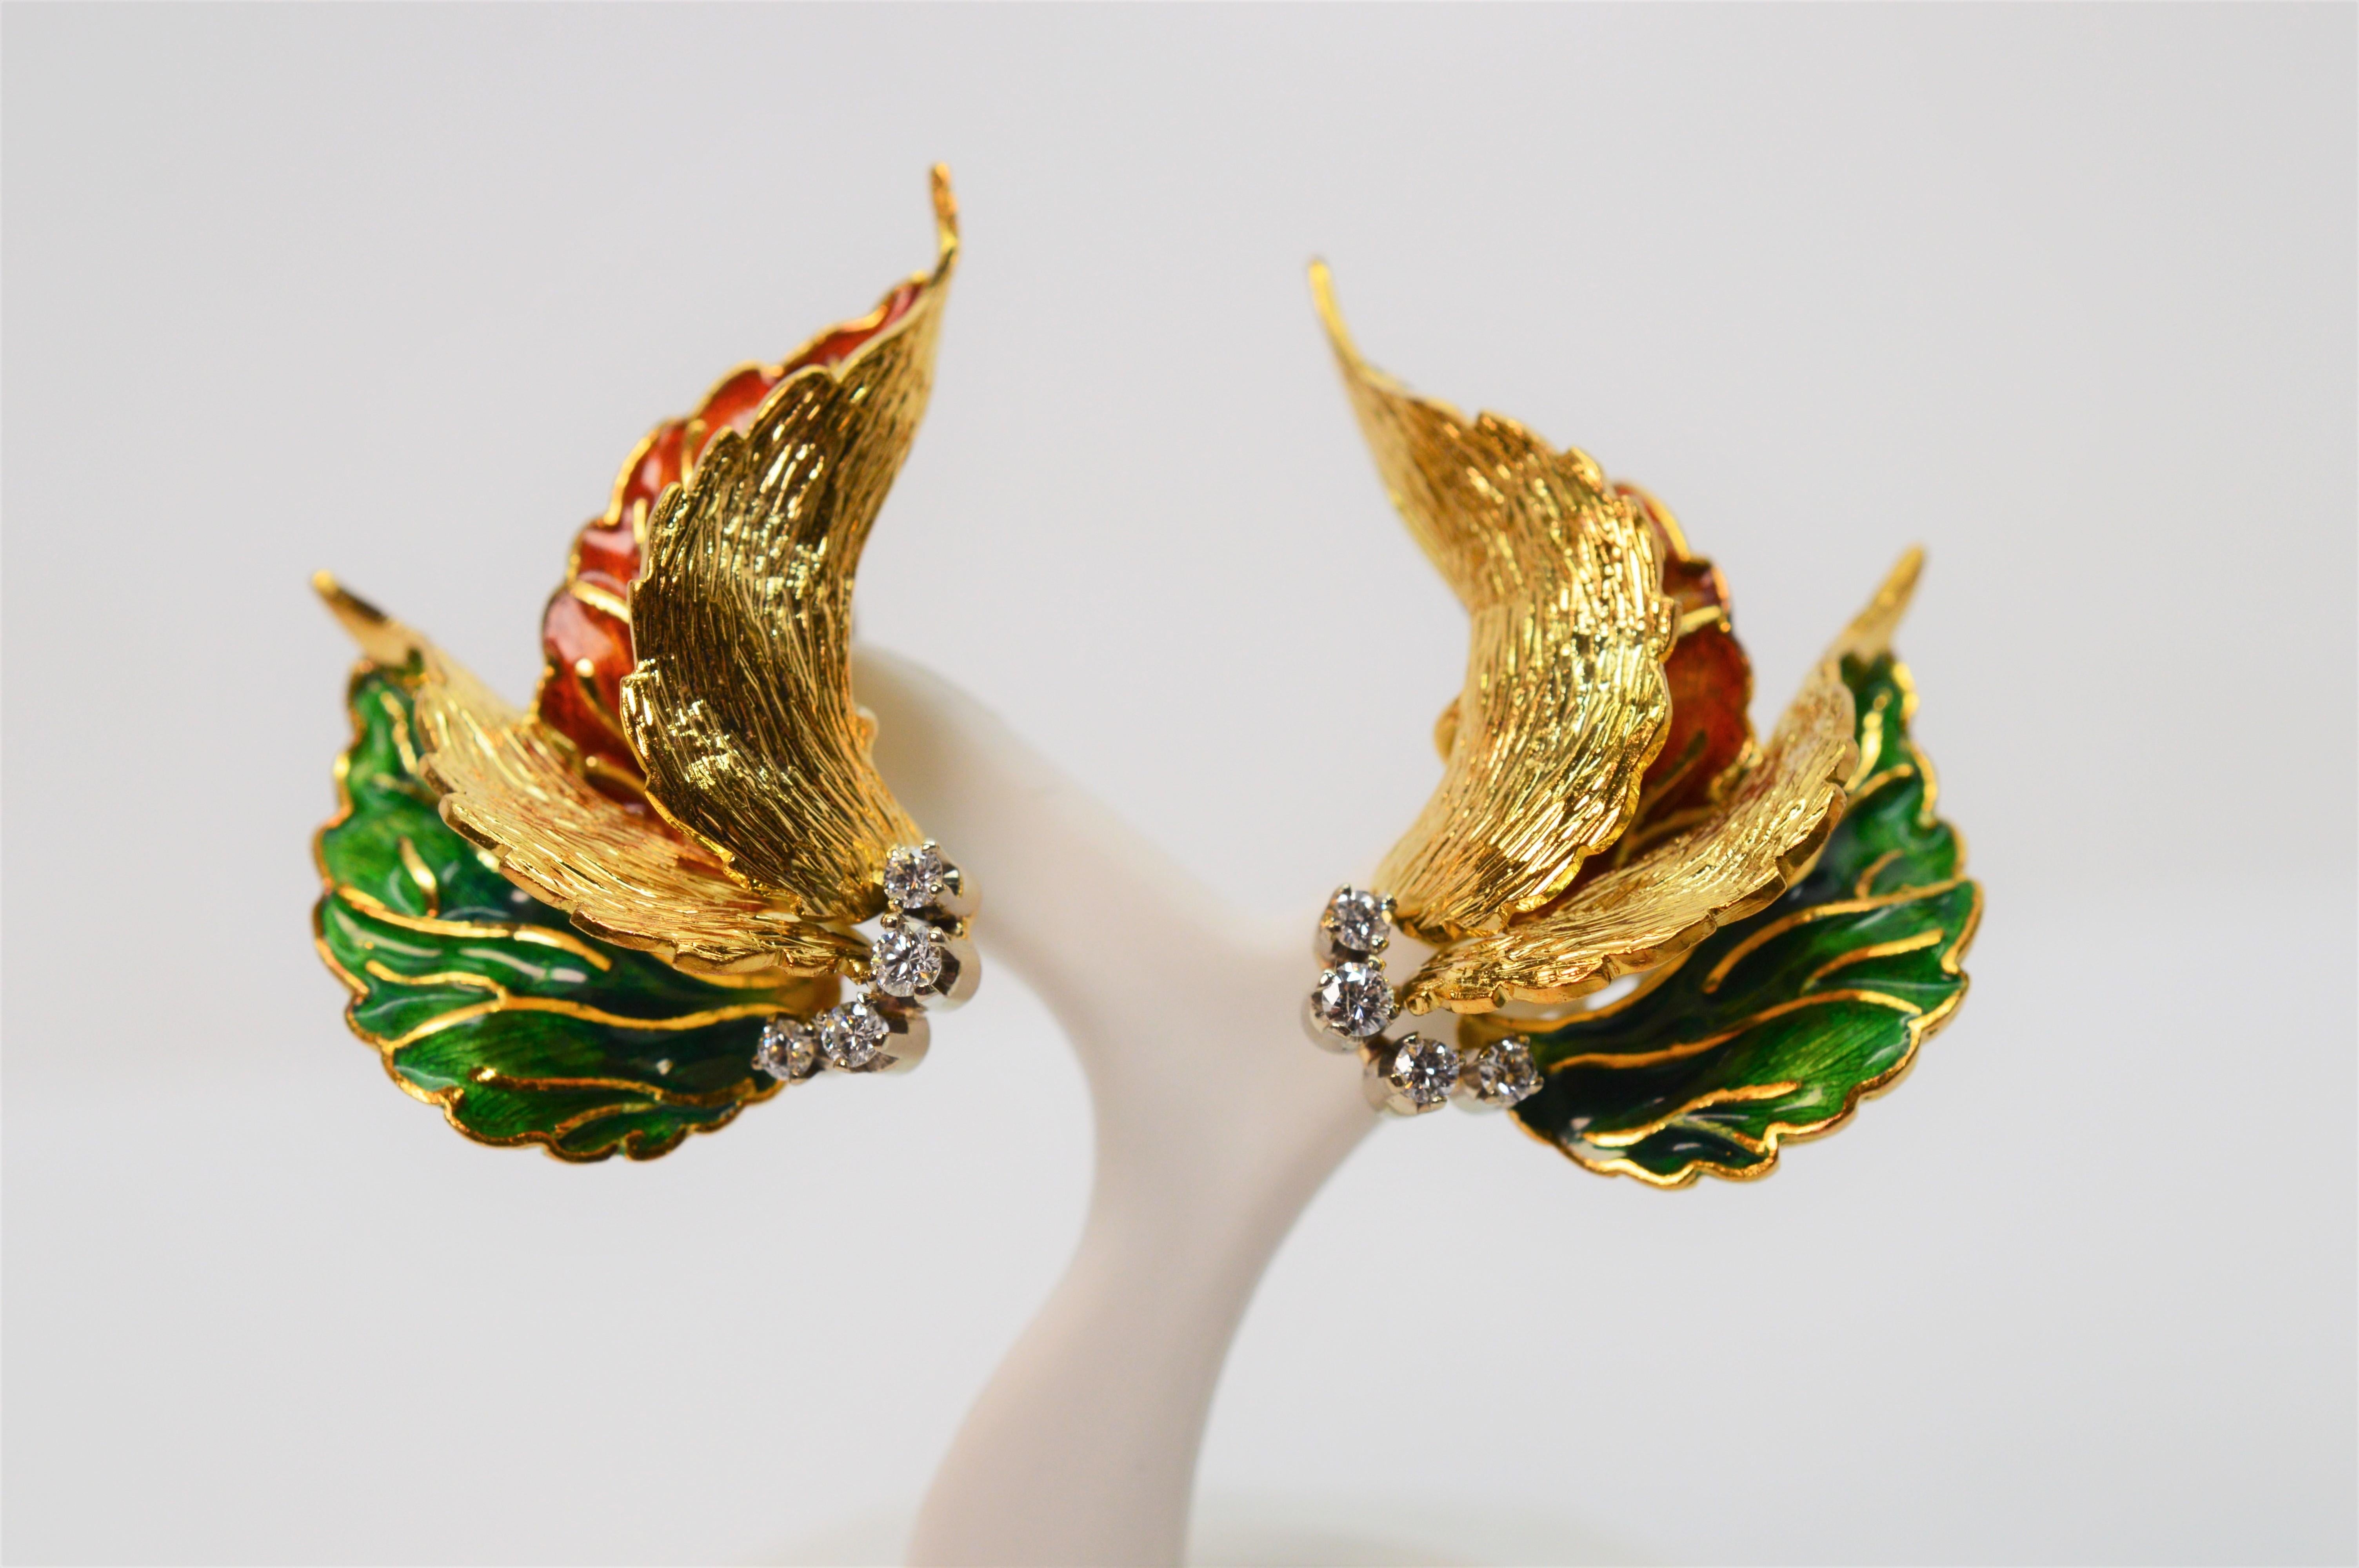 Italian Enamel Diamond 18K Yellow Gold Art Leaf Stud Earrings For Sale 2